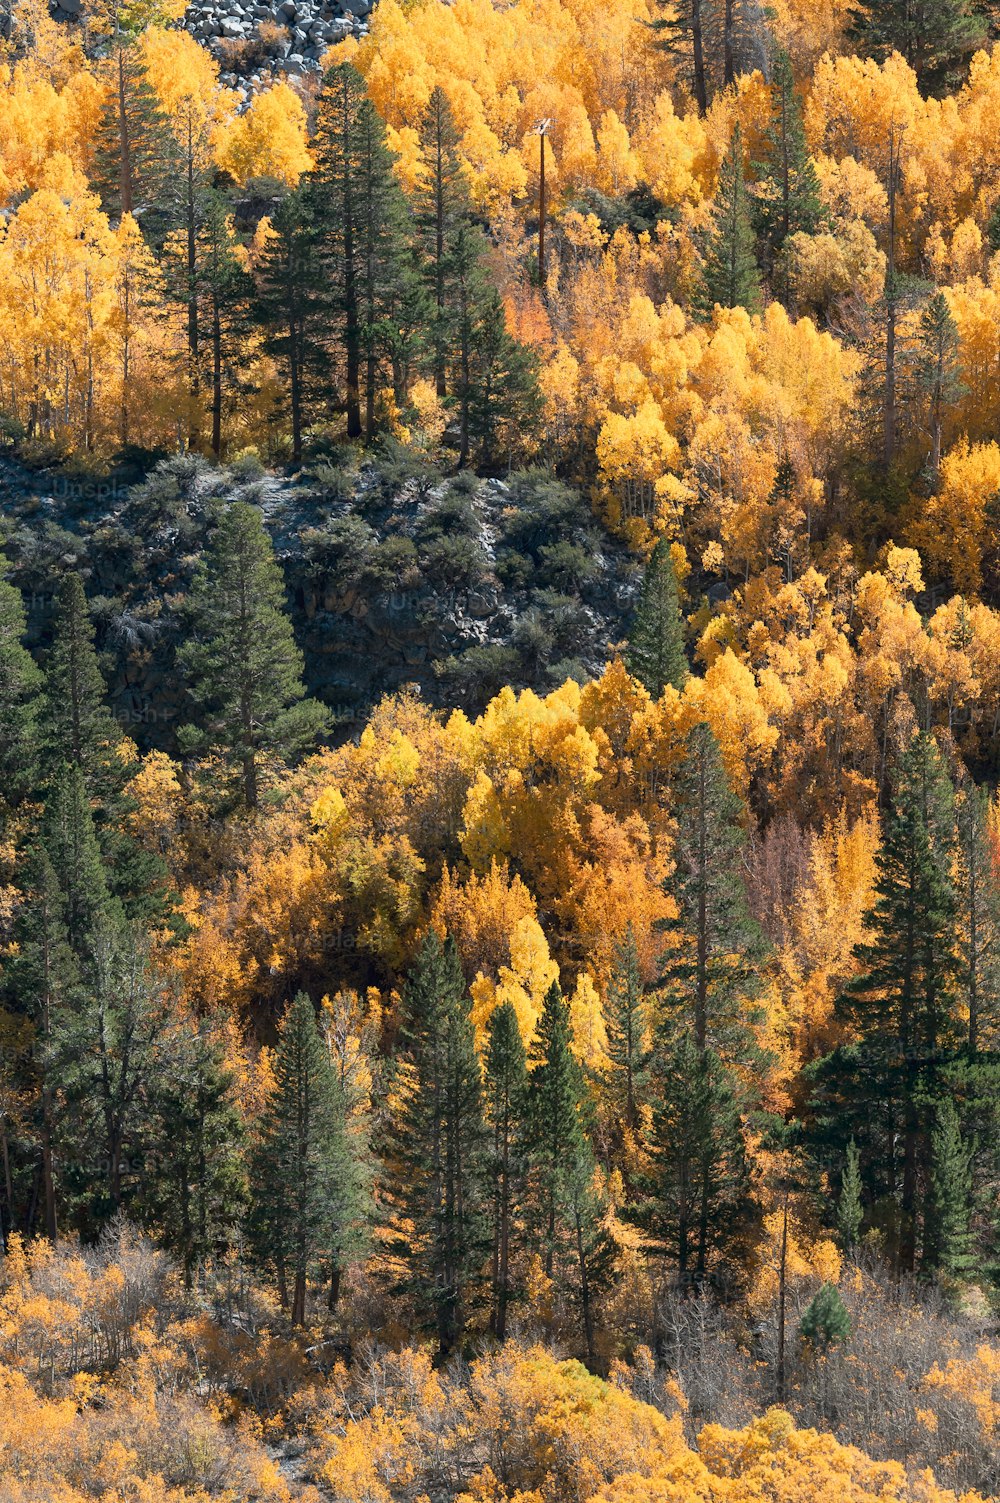 Un bosque lleno de muchos árboles cubiertos de hojas amarillas